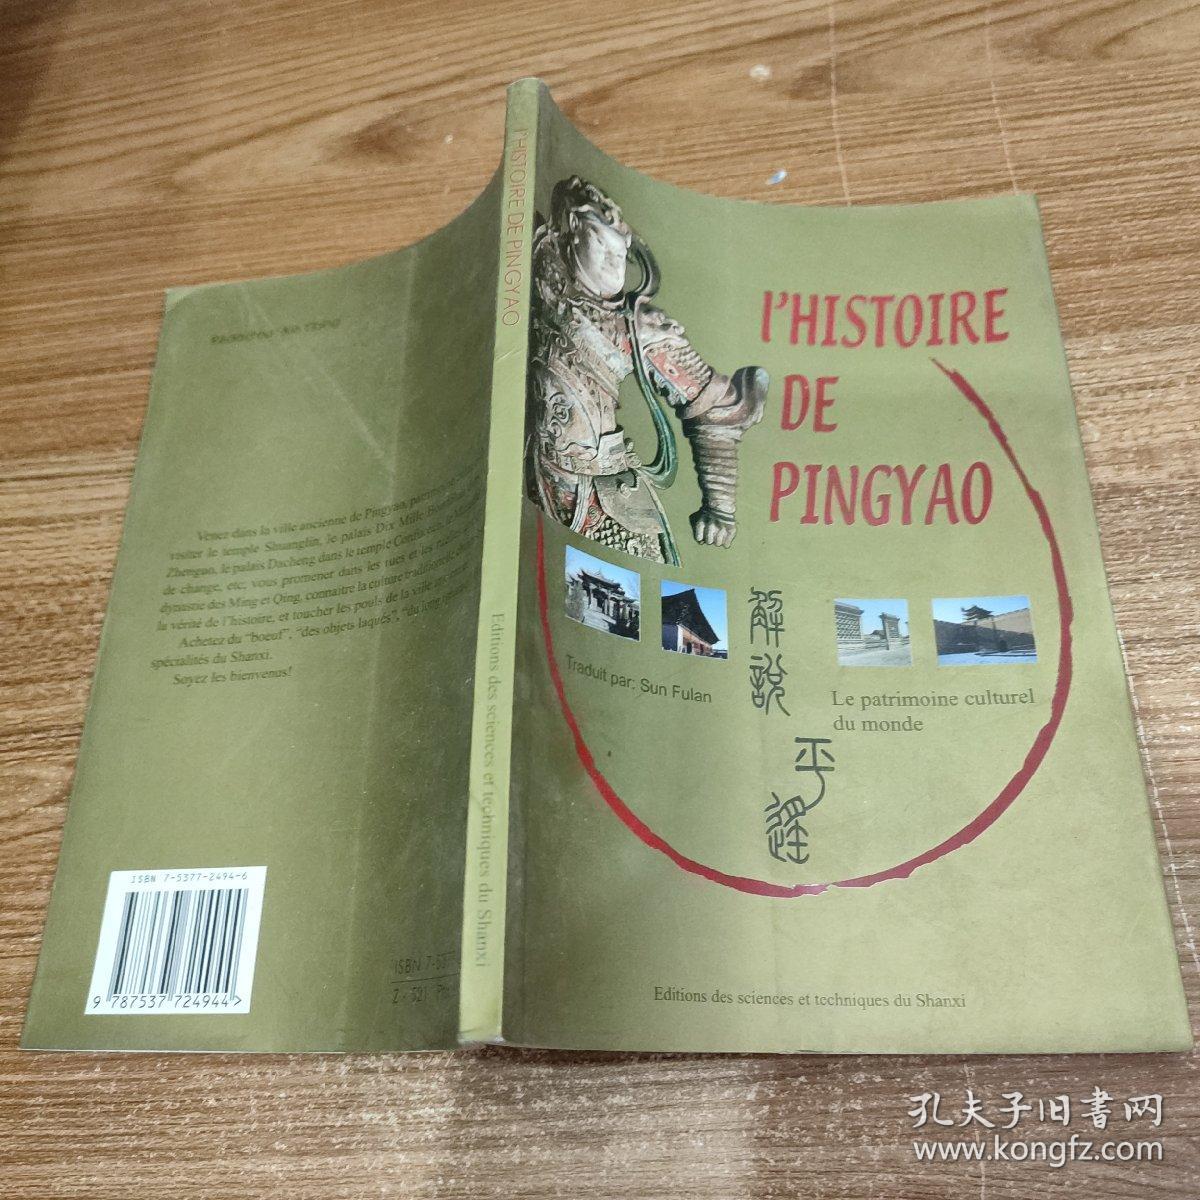 I'HISTOIRE DE PINGYAO【解说平遥】